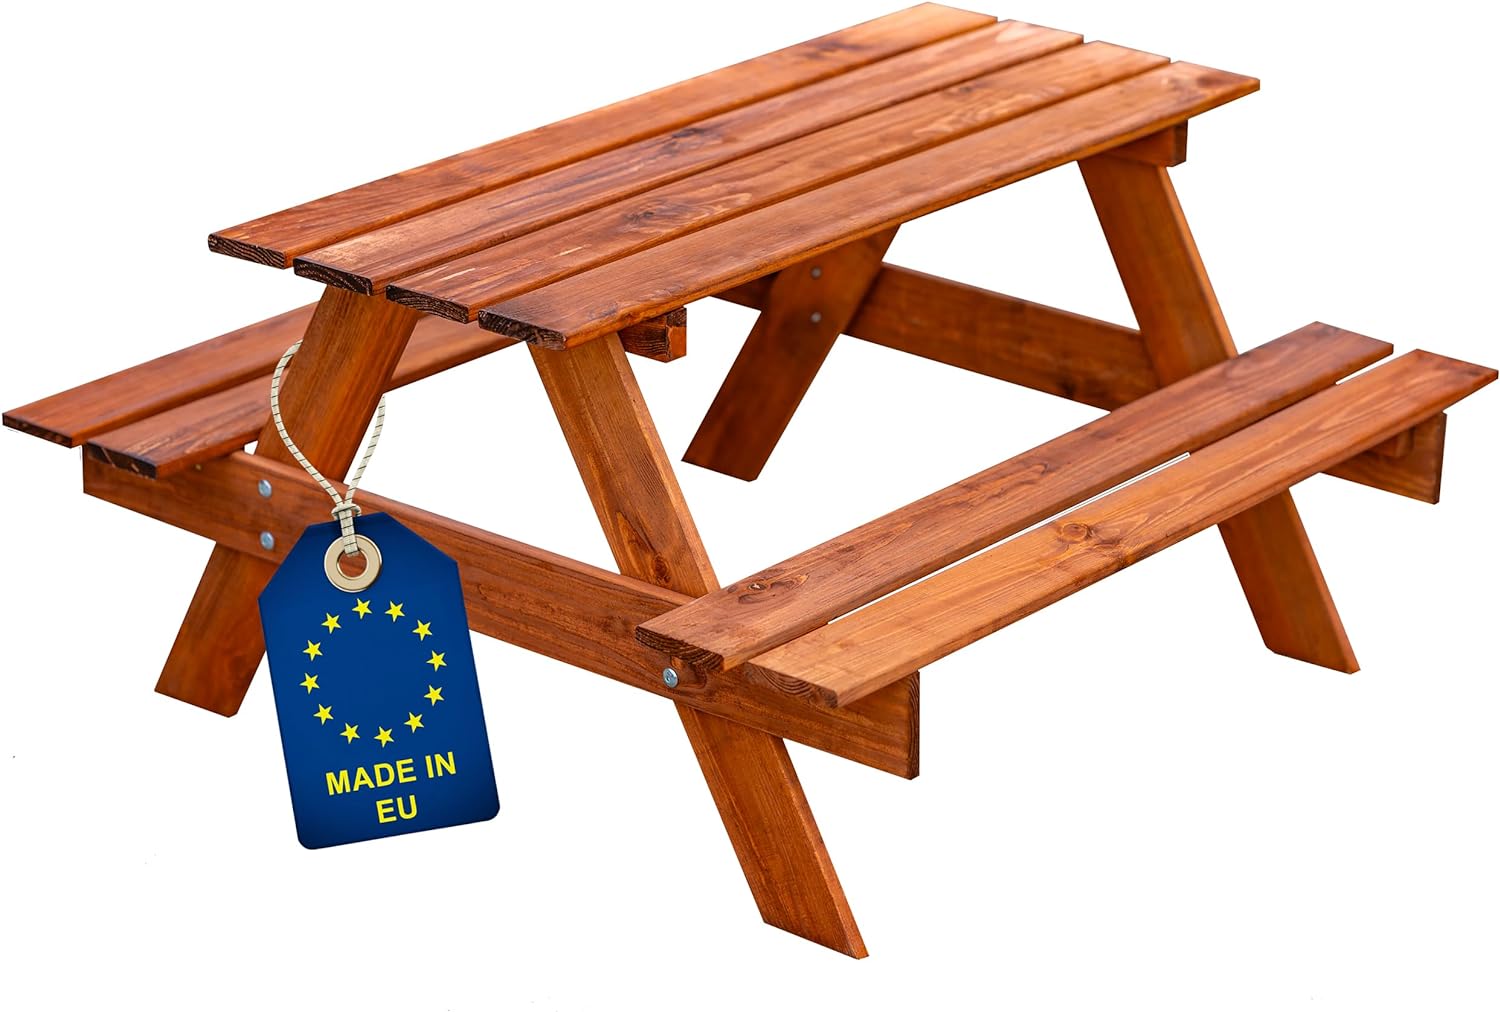 ITA Kindersitzgarnitur aus Holz – Kinder Picknicktisch mit 2 Bänken